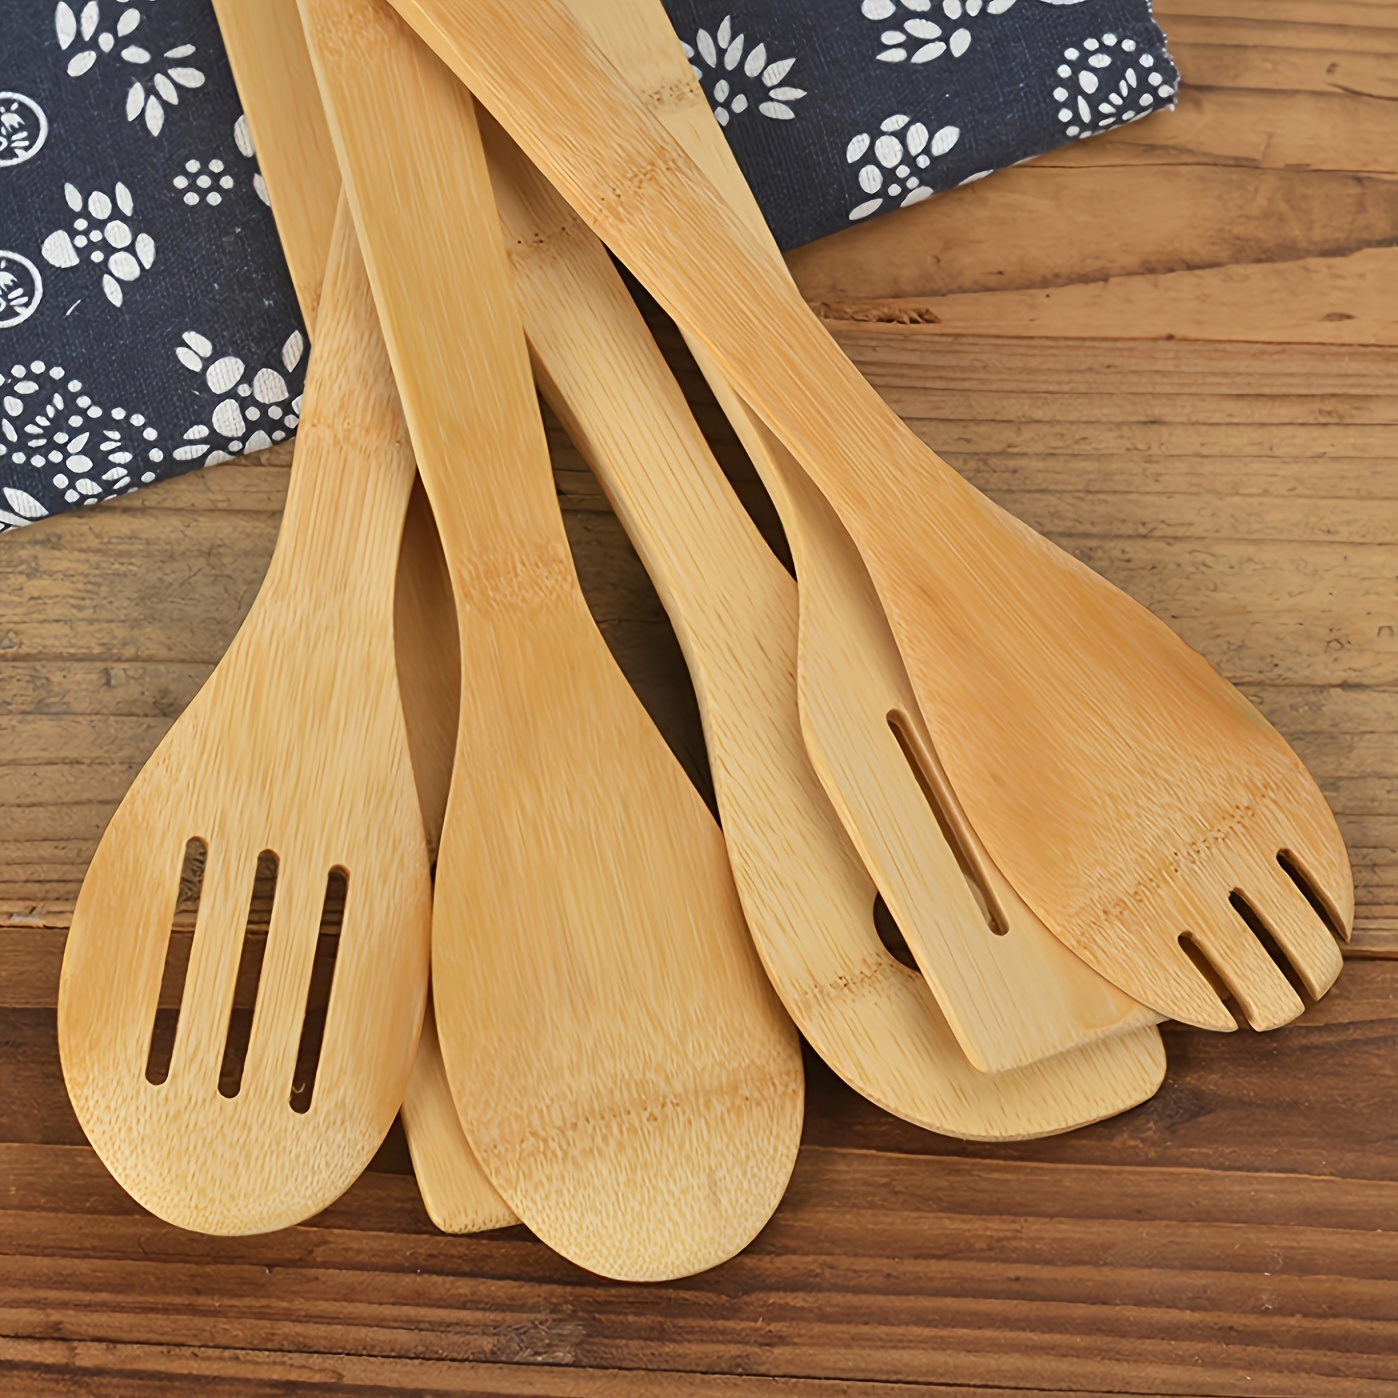 6 piezas de utensilios de madera, cucharas de madera para cocinar, juego de  utensilios de bambú, juego de utensilios de cocina antiadherentes de cucha